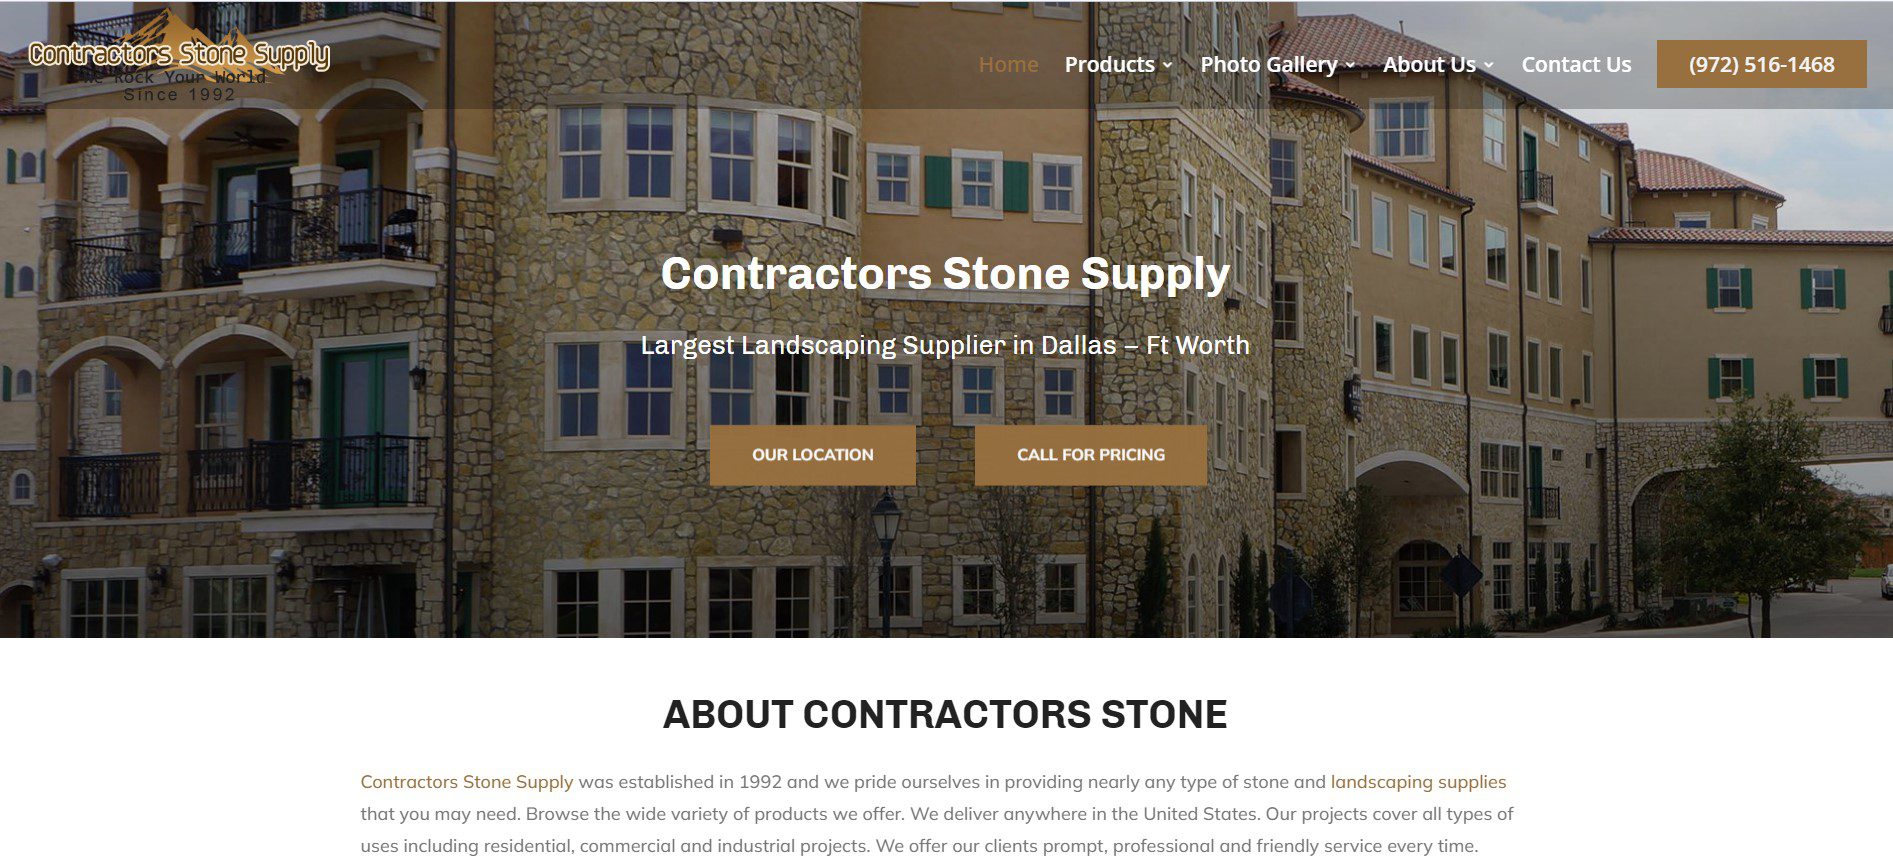 ContractorsStoneSupplyHomepage